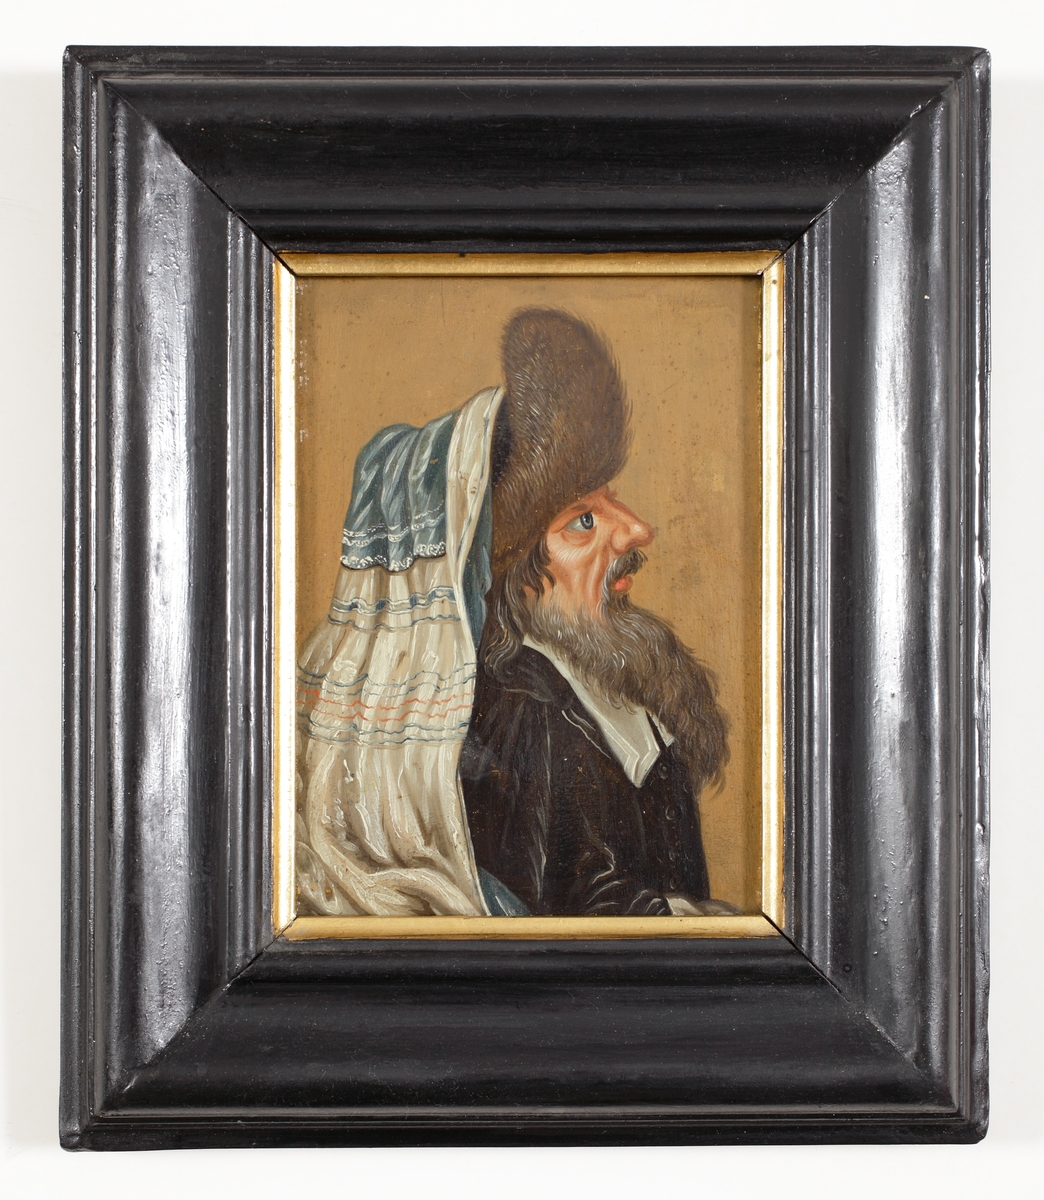 Oljemålning.
Genremålning föreställande äldre man med skägg, klädd i mörk rock, pälsmössa och blåvit sjal. 
Bröstbild, profil. 
Ej signerad. Tillskriven Pehr Hilleström d.ä. (1733-1816). 
På baksidan text.